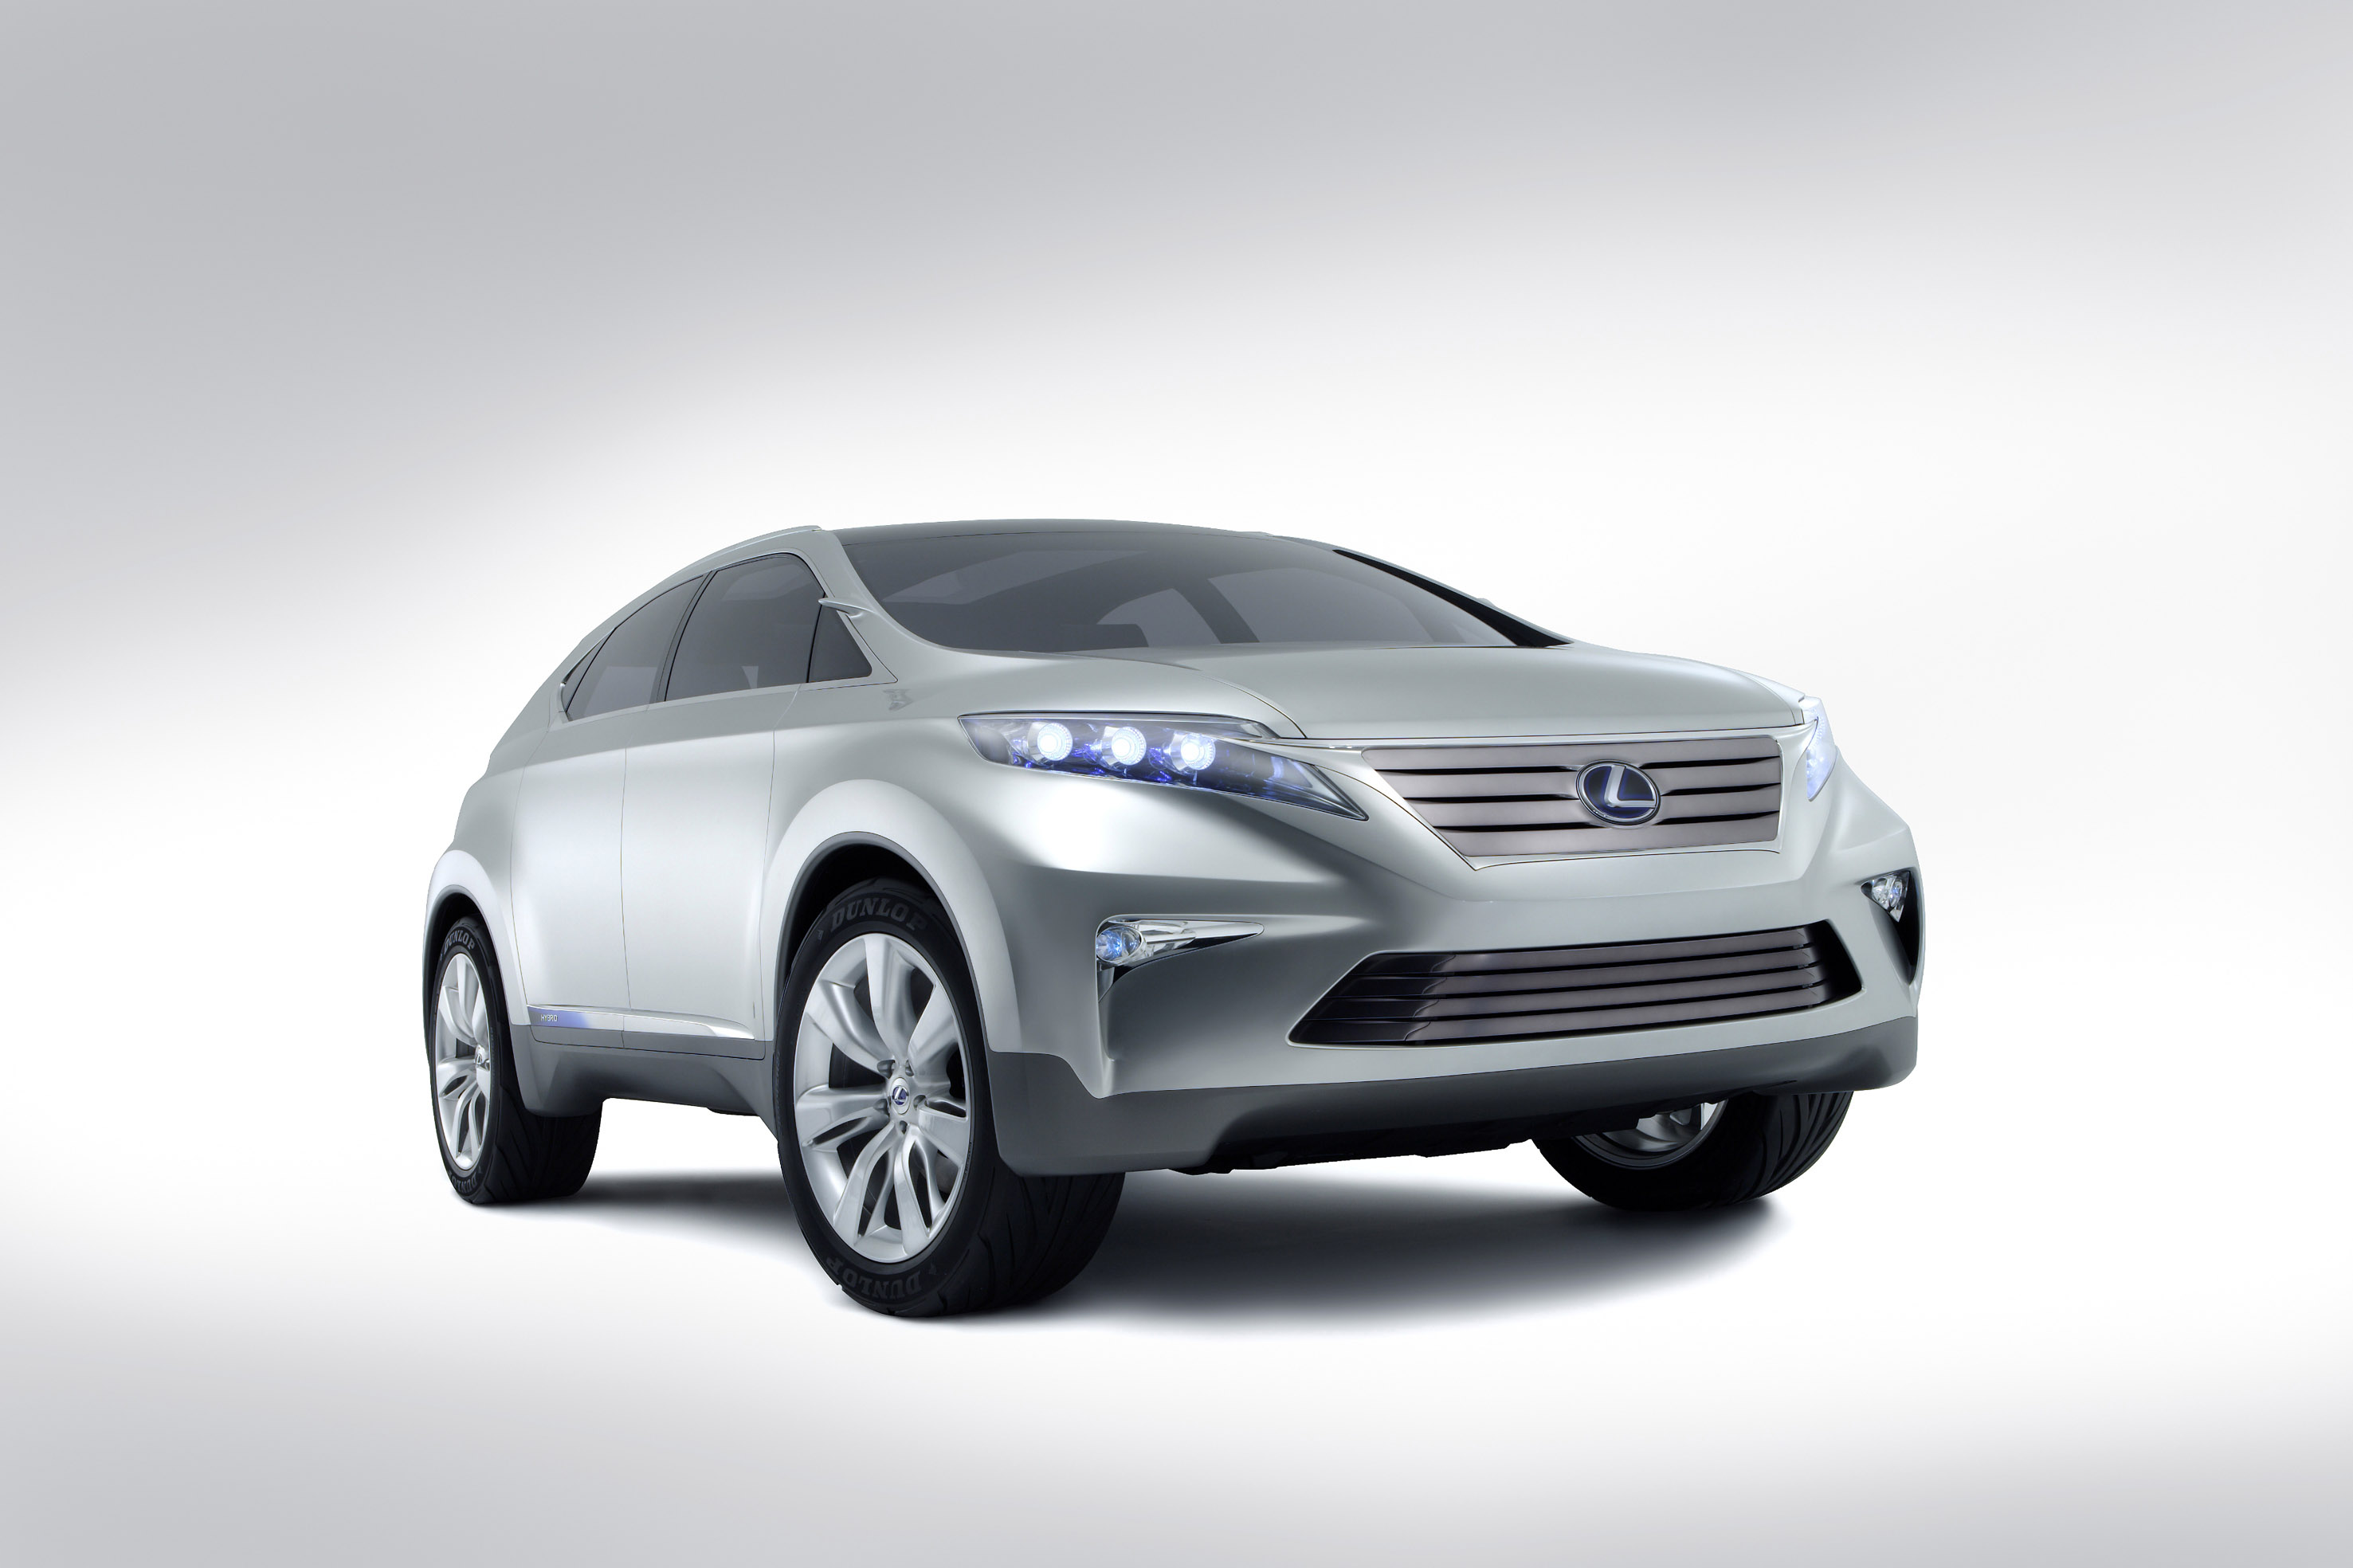 Lexus LF-Xh Hybrid SUV Concept